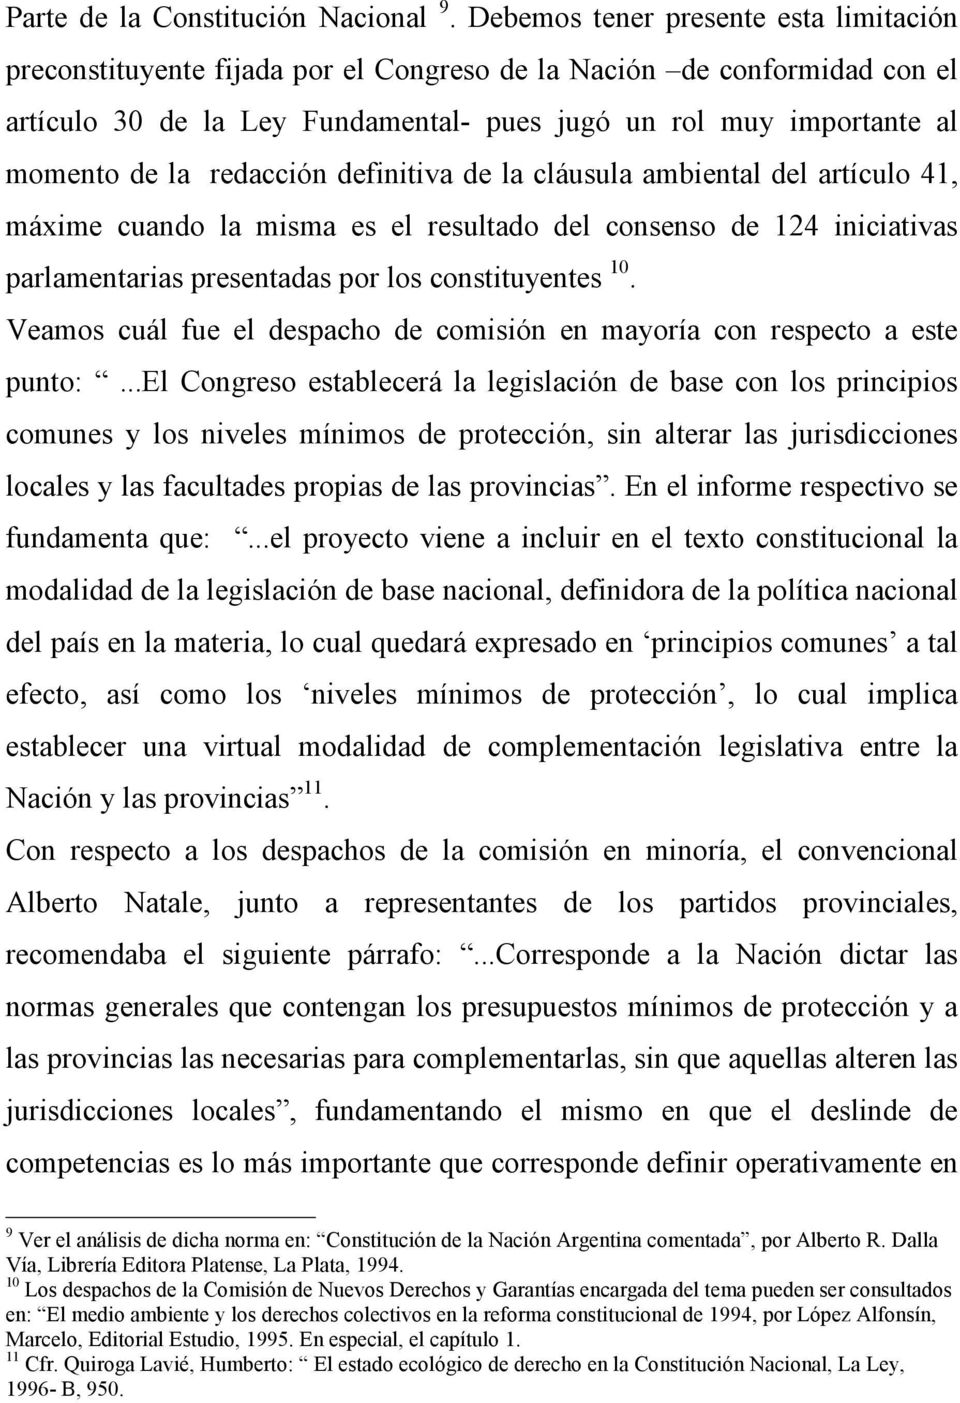 redacción definitiva de la cláusula ambiental del artículo 41, máxime cuando la misma es el resultado del consenso de 124 iniciativas parlamentarias presentadas por los constituyentes 10.